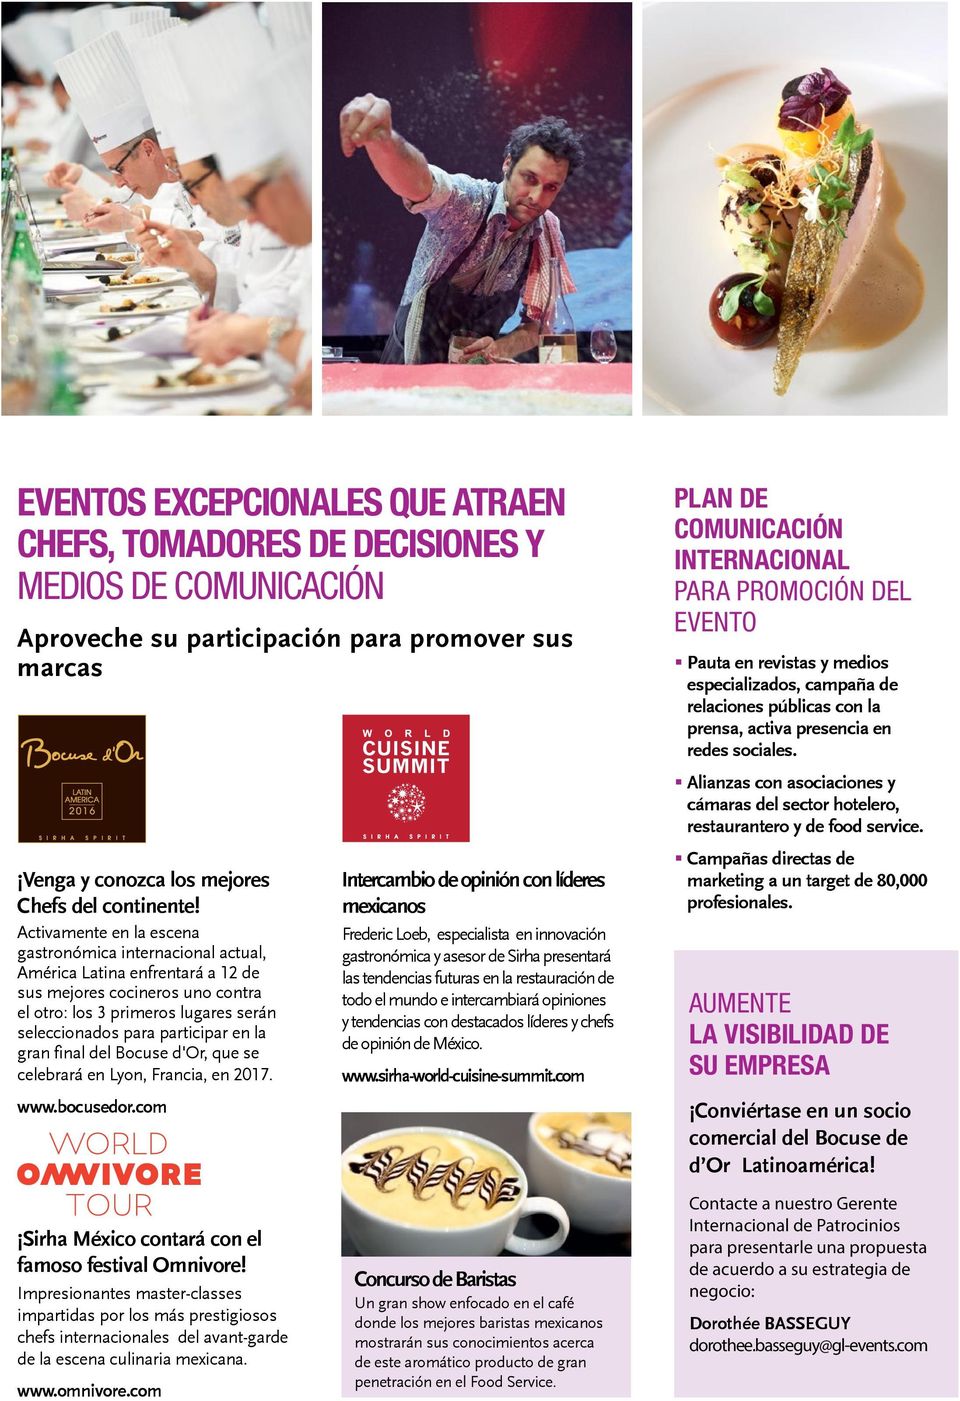 Activamente en la escena gastronómica internacional actual, América Latina enfrentará a 12 de sus mejores cocineros uno contra el otro: los 3 primeros lugares serán seleccionados para participar en